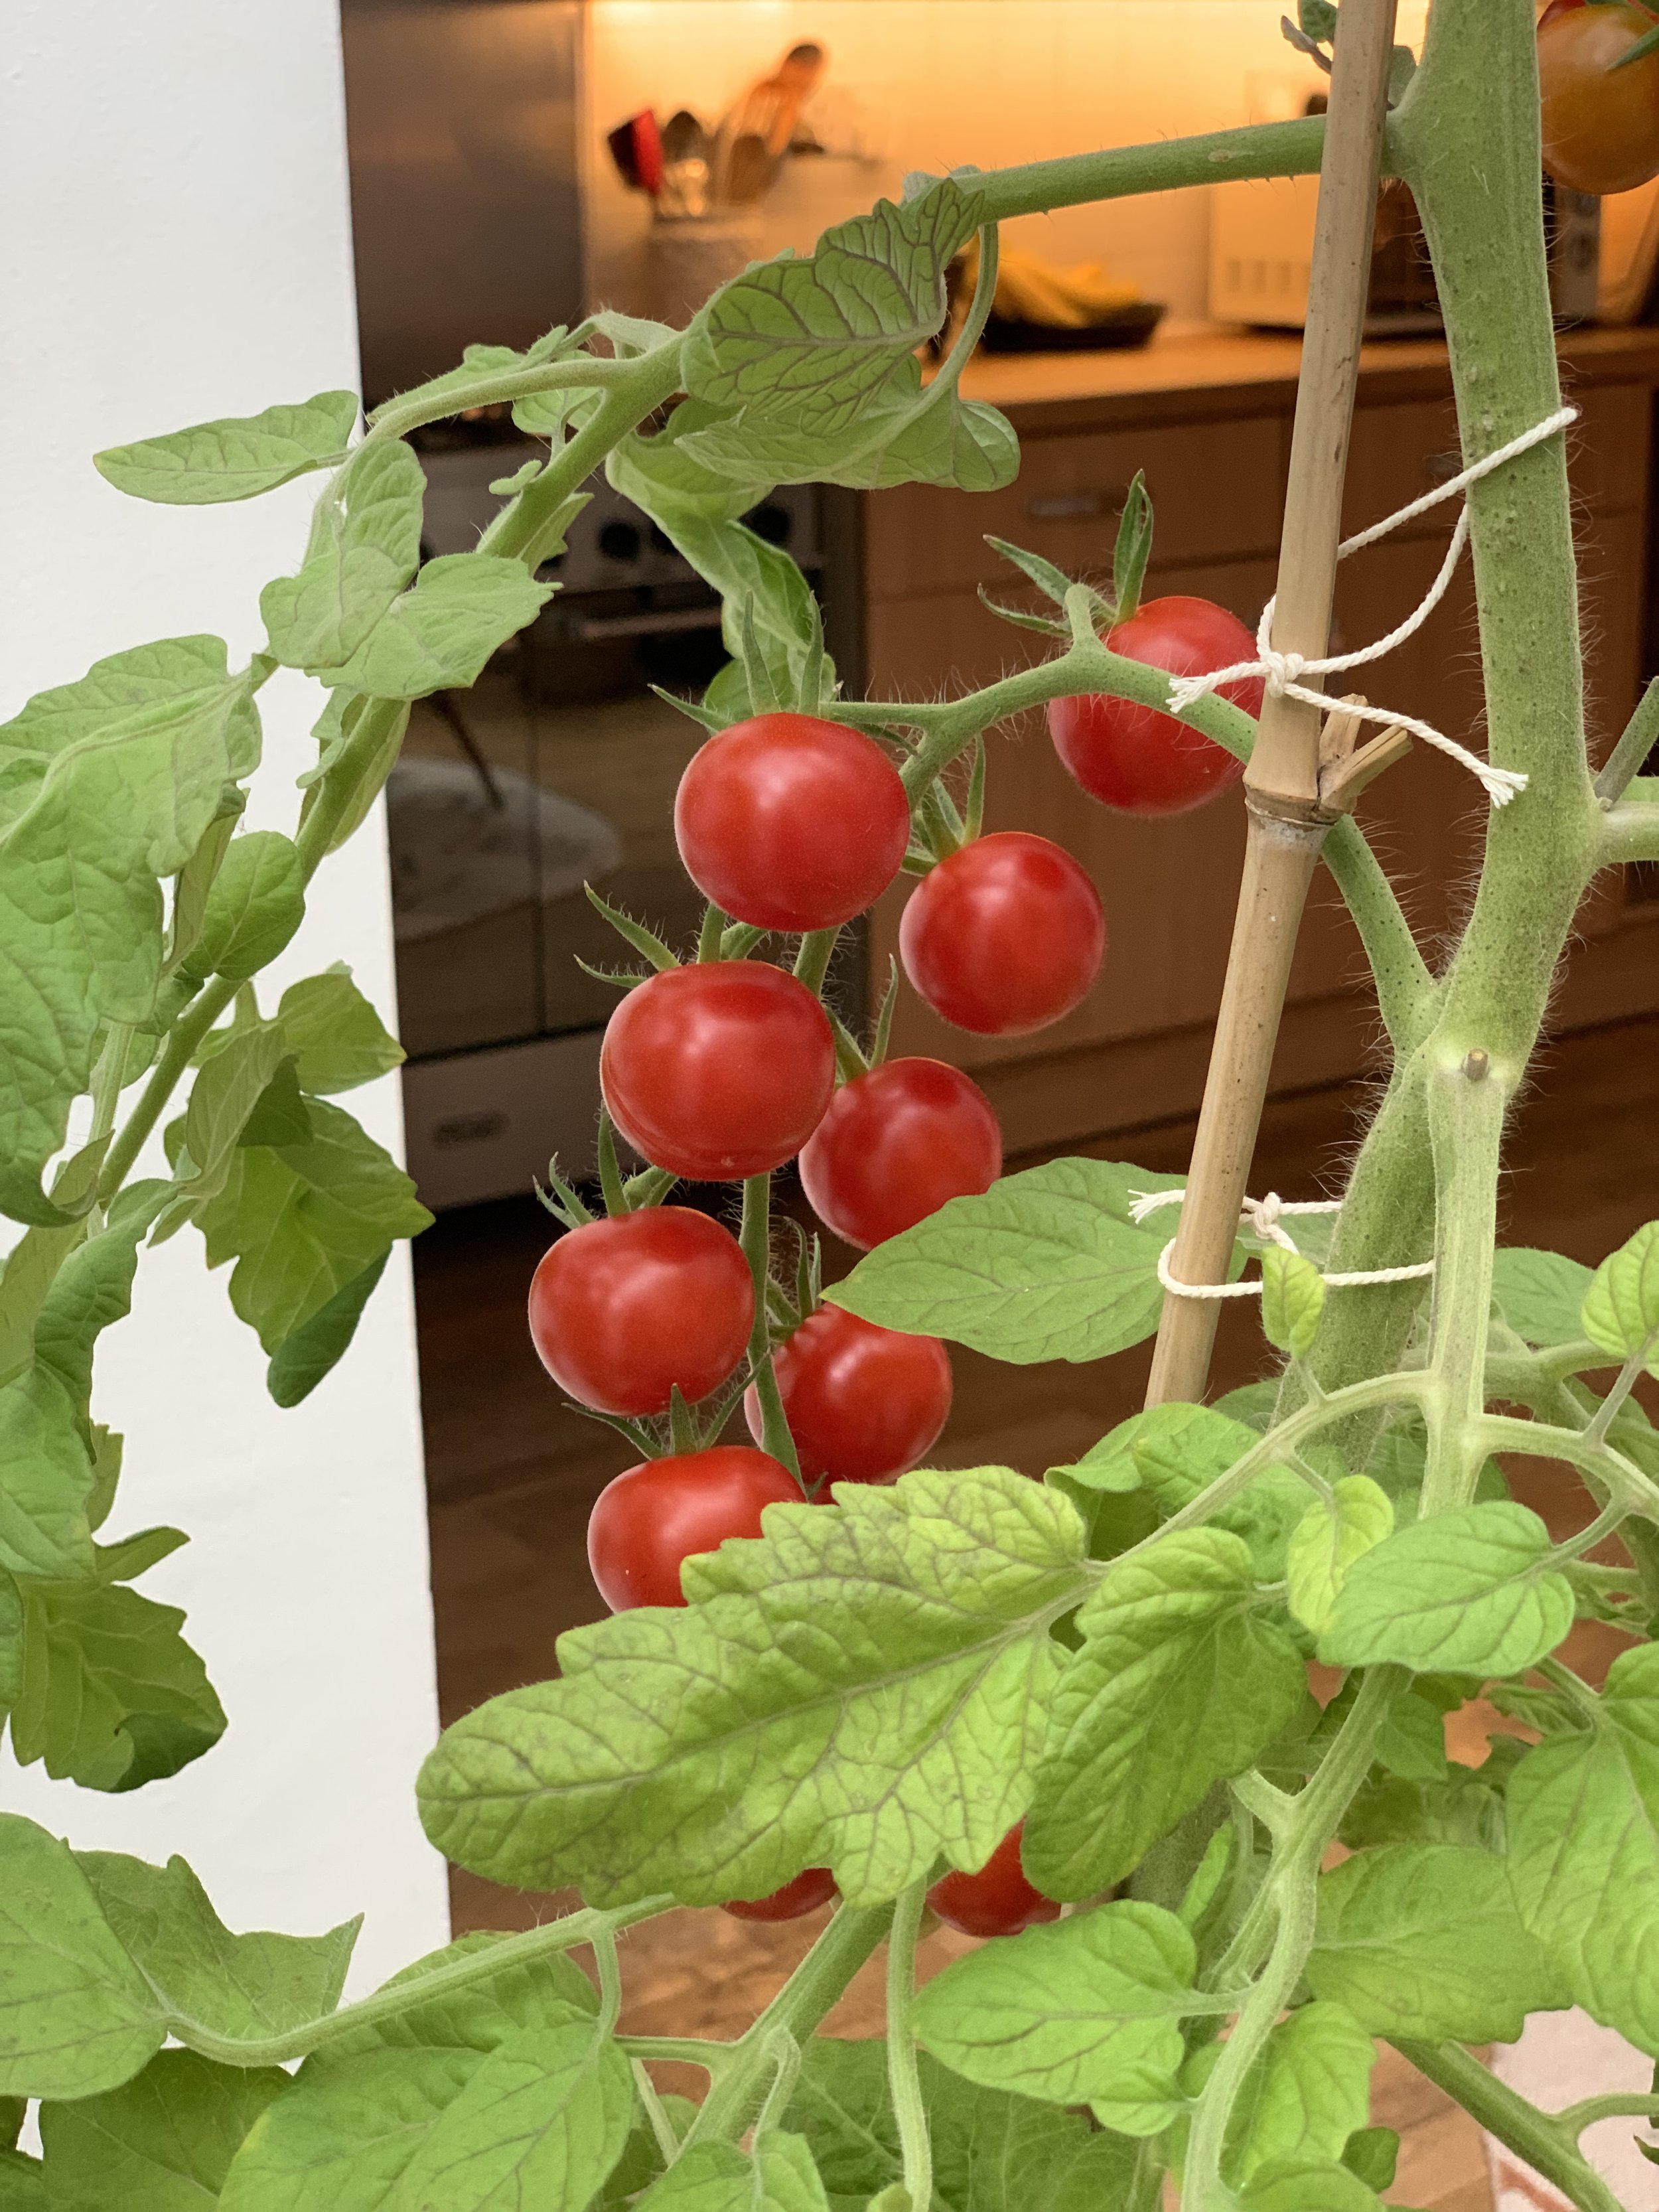 Growing Tall Varieties In Grow Bags - Tomato Growing